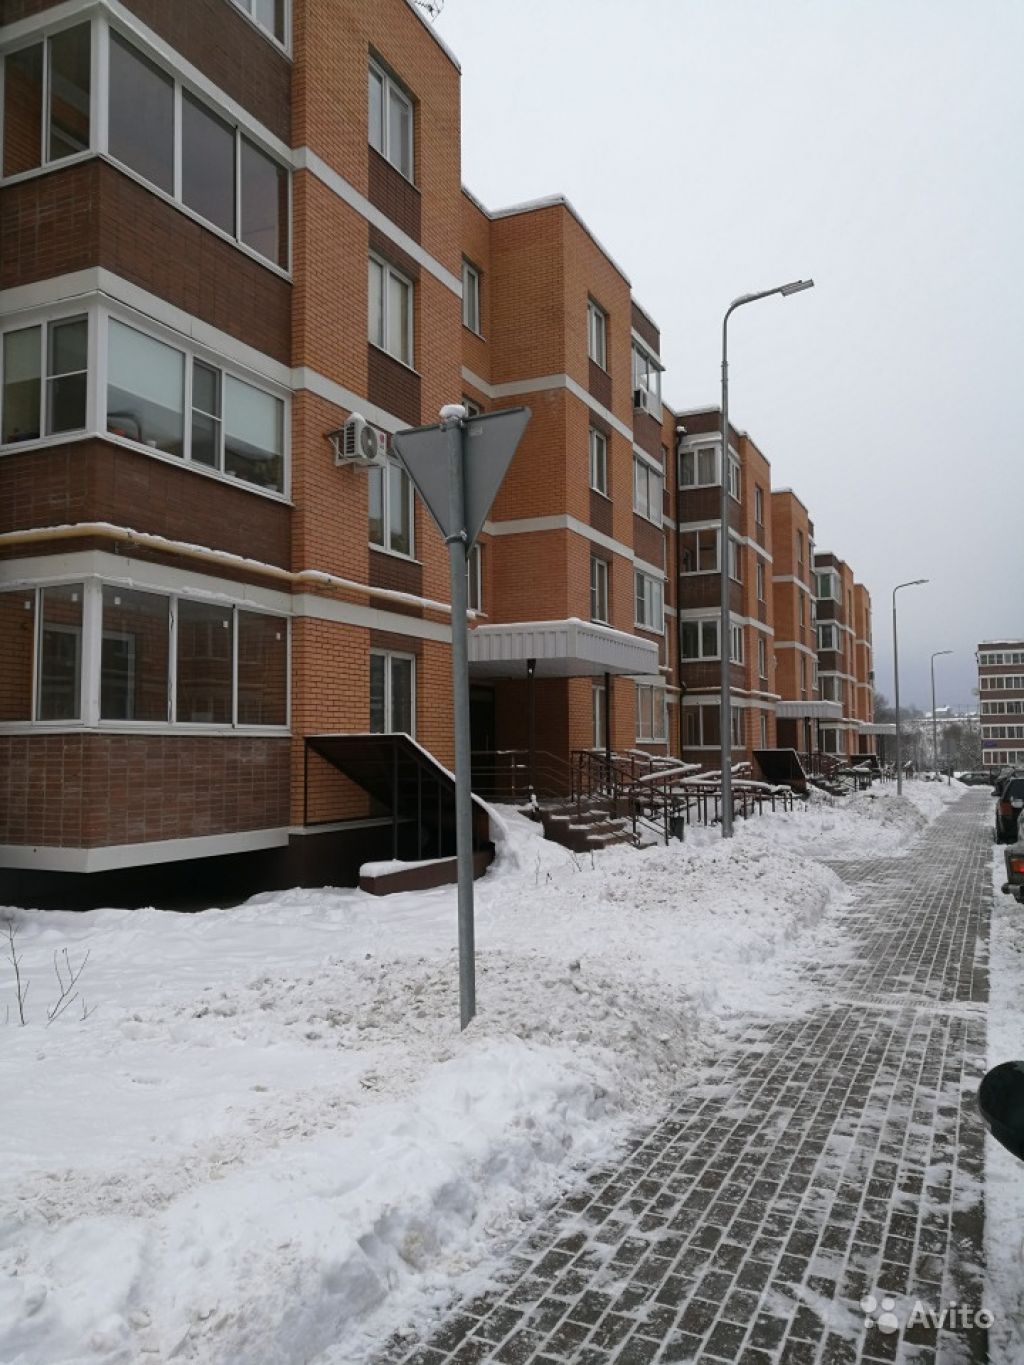 Продам квартиру 1-к квартира 54 м² на 3 этаже 4-этажного монолитного дома в Москве. Фото 1